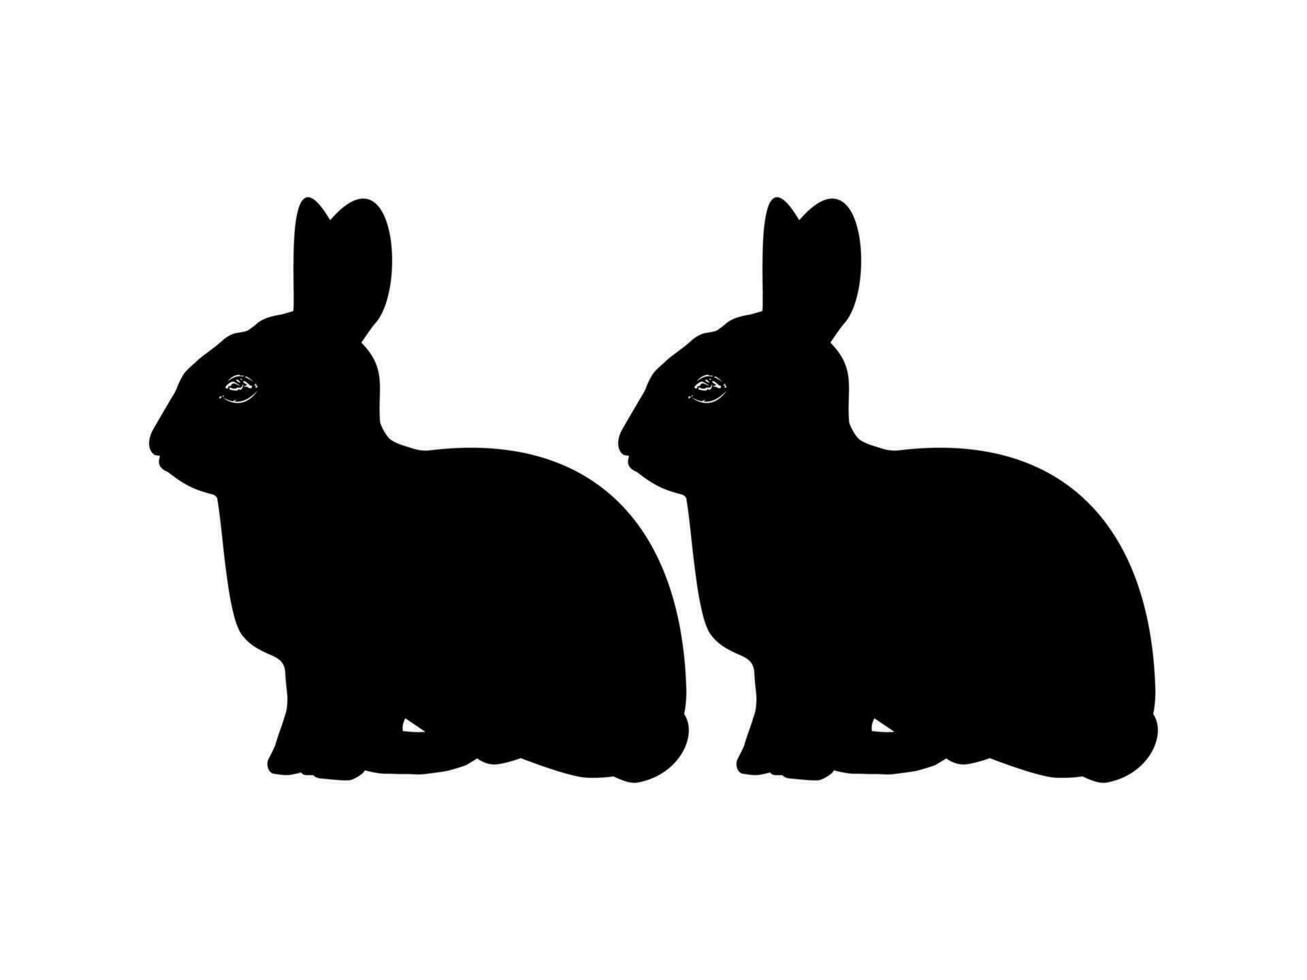 paar- van de konijn of konijn of haas silhouet voor kunst illustratie, logo type, pictogram, appjes, website of grafisch ontwerp element. vector illustratie